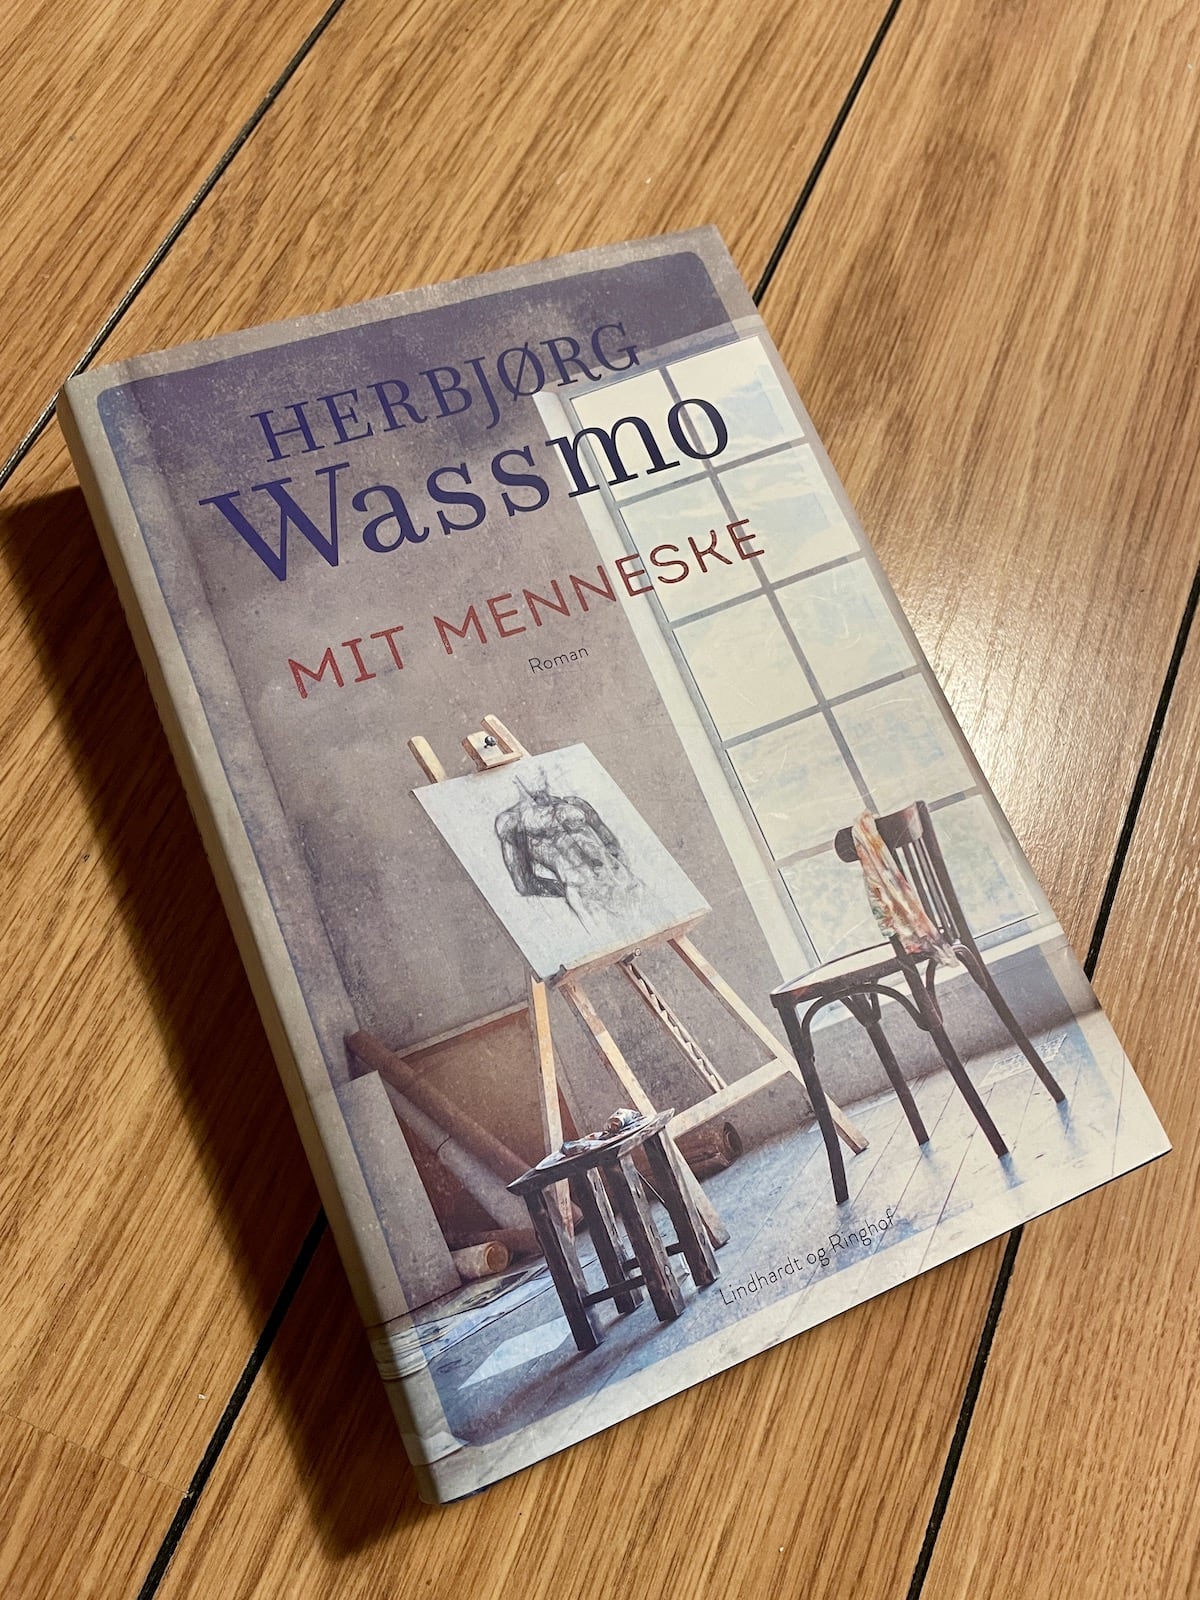 Mit menneske, Herbjørg Wassmo, brugt bog